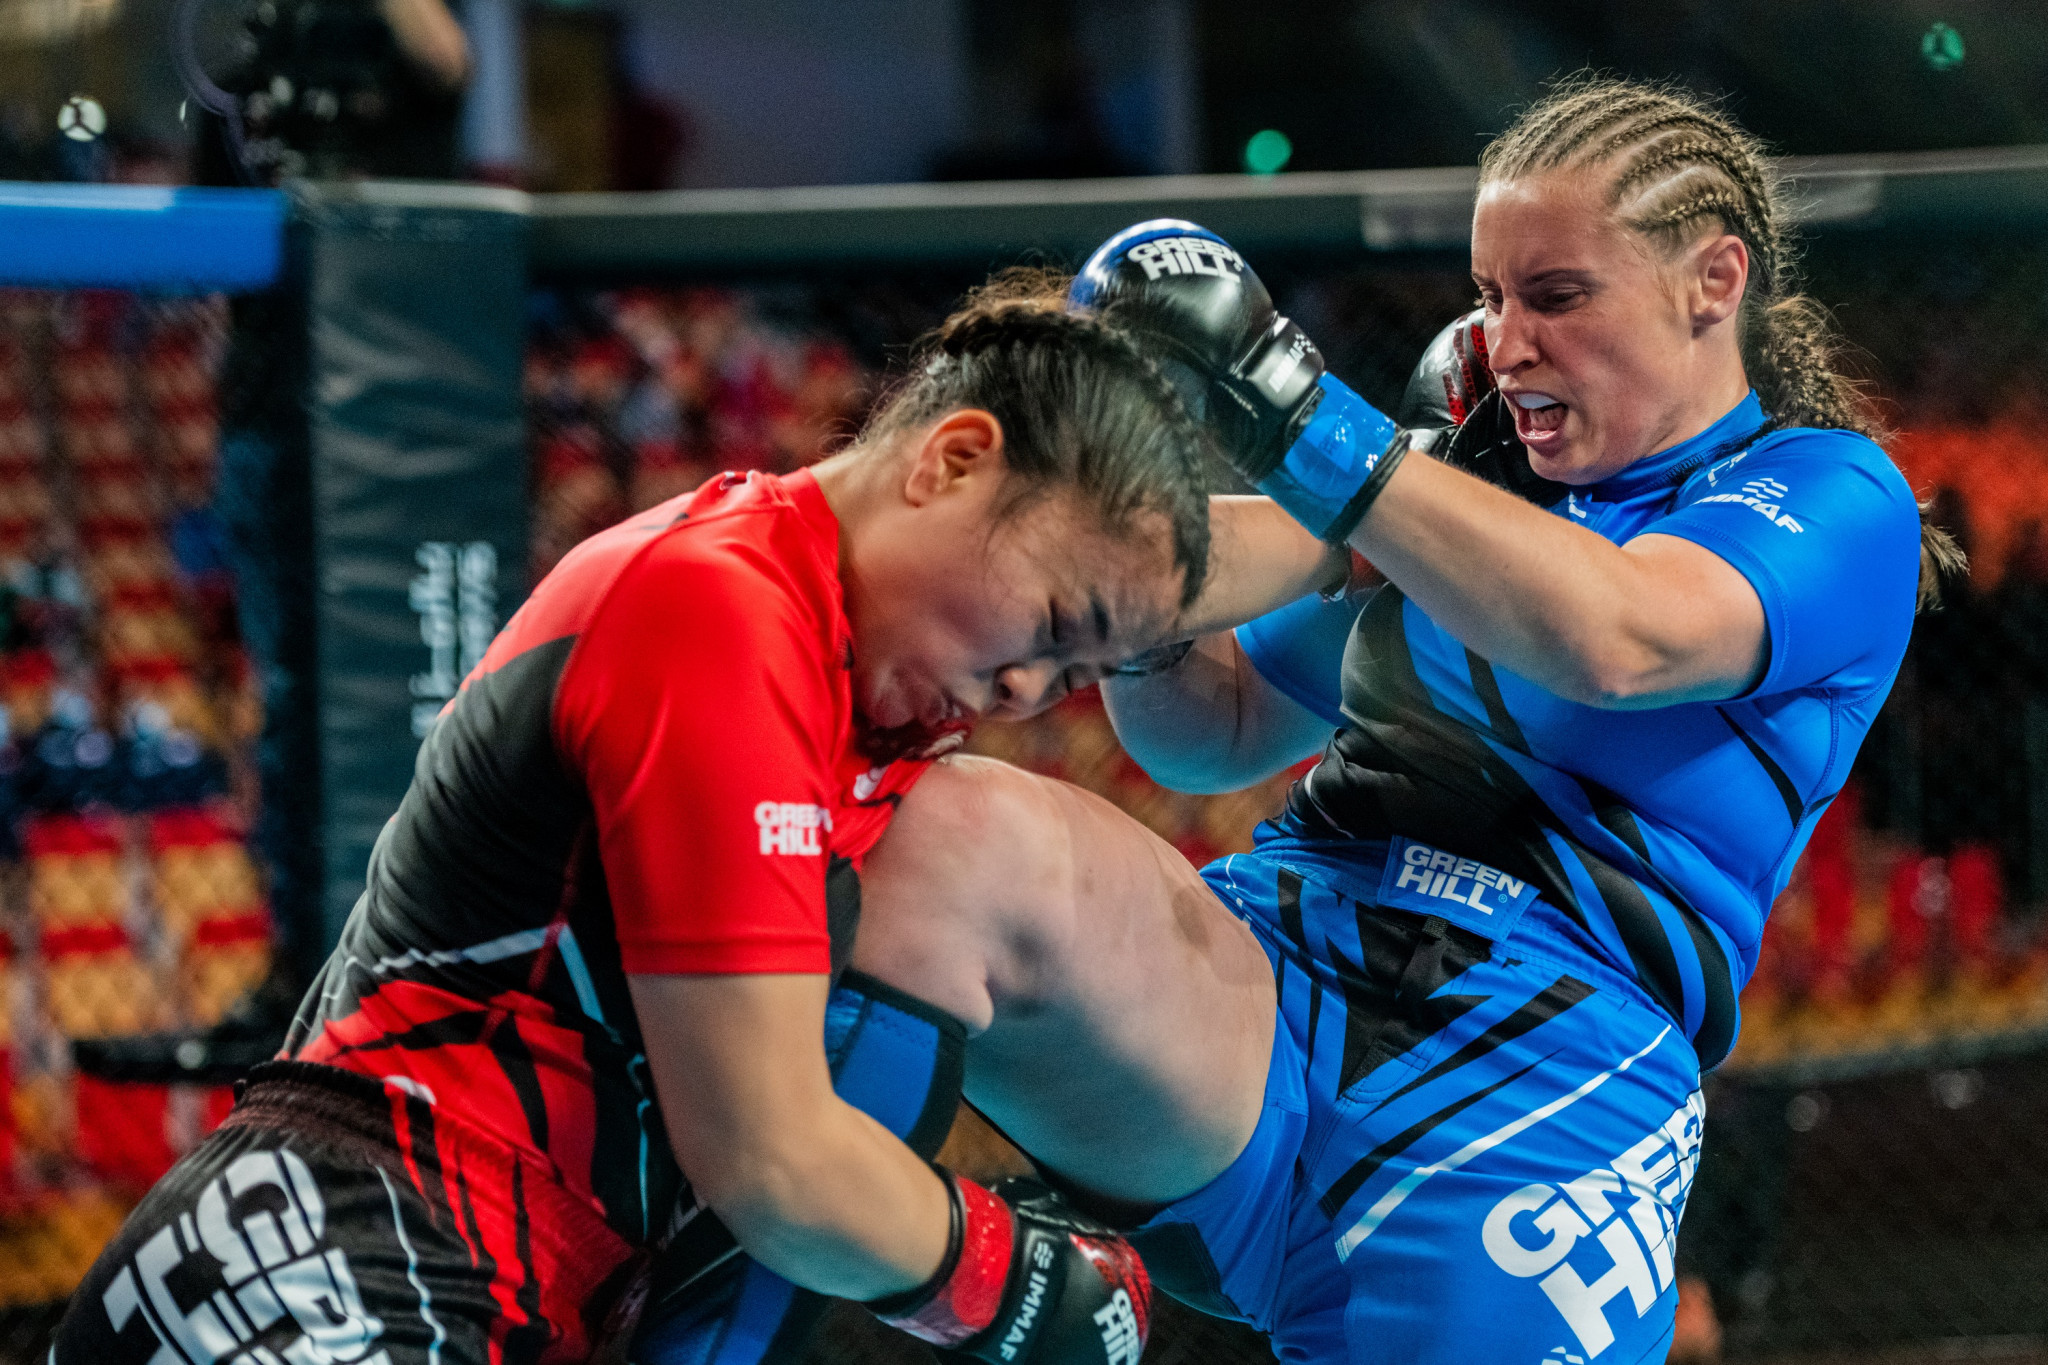 New Zealand's Mel Webster knees her opponent in a losing effort ©IMMAF